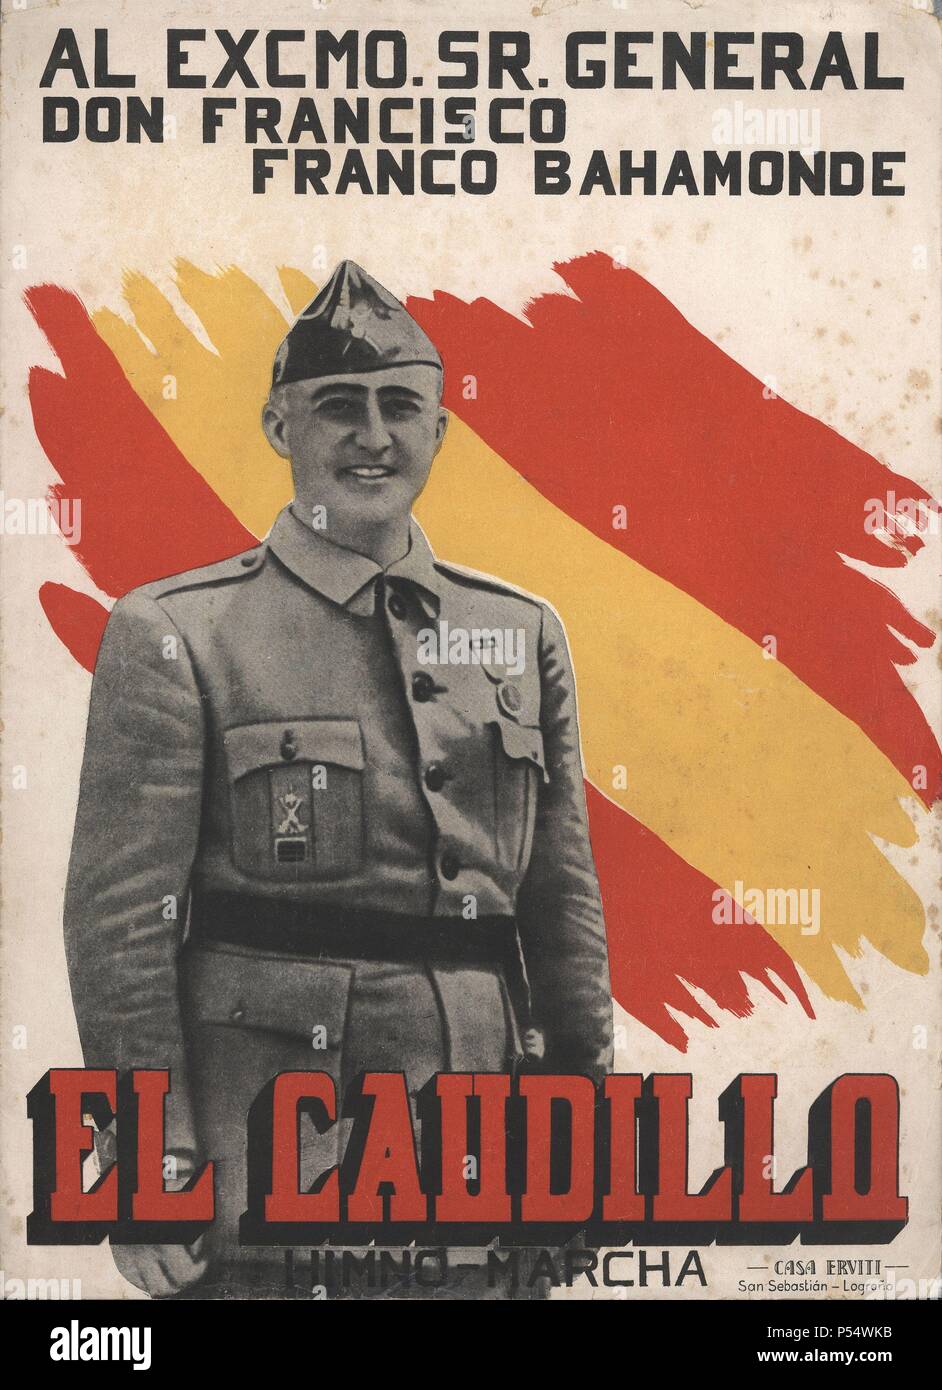 Partitura musical del himno 'El Caudillo', dedicado al general Francisco Franco Bahamonde. Stock Photo